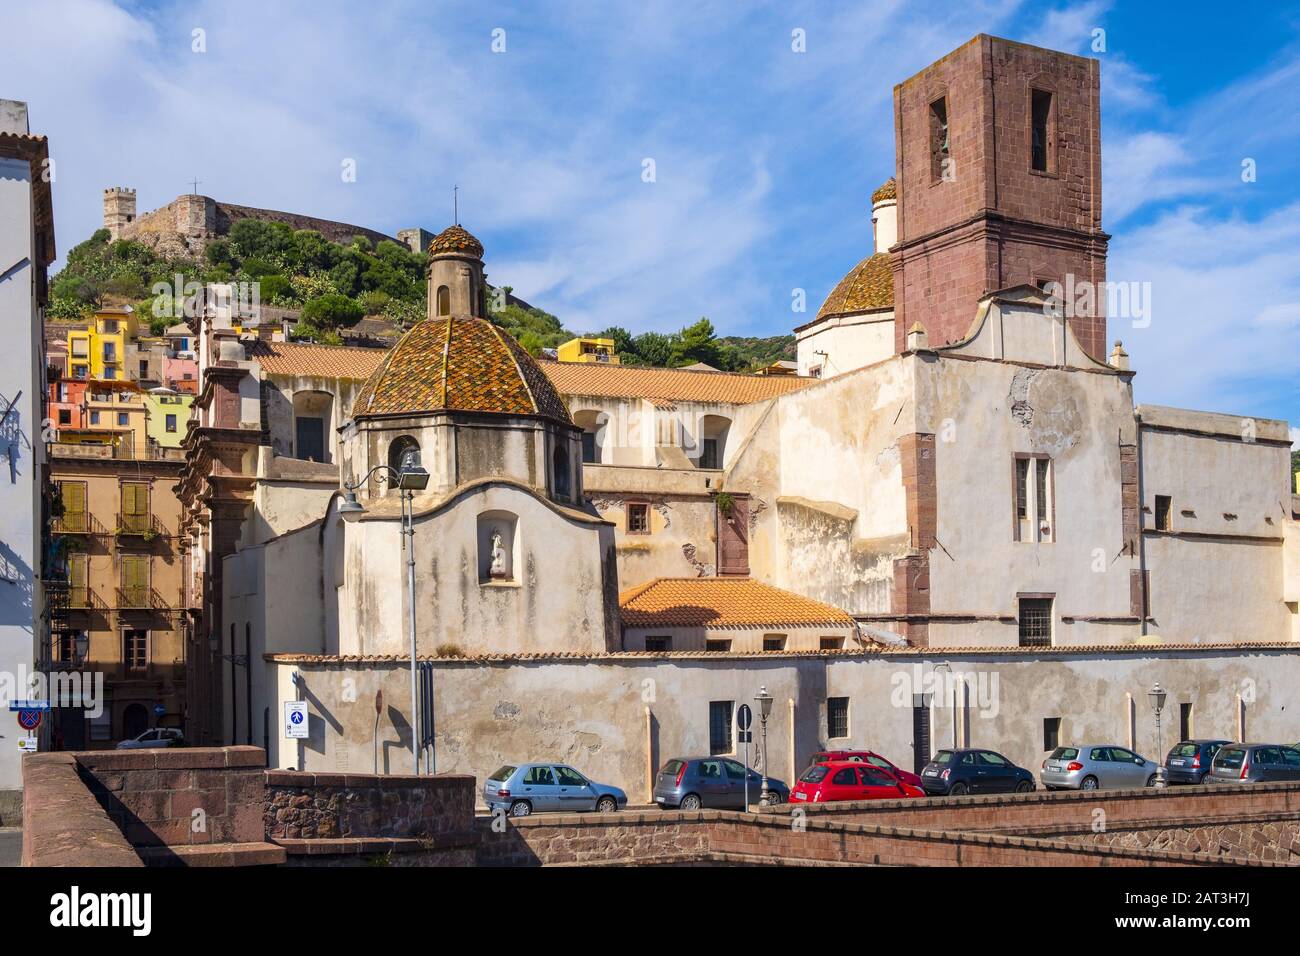 Bosa, Sardinien/Italien - 2018/08/13: Bosa-Kathedrale - Dom di Bosa - am Piazza Duomo am Temo-Flussdamm mit dem Schloss Malaspina - Schloss Serravalle - im Hintergrund Stockfoto